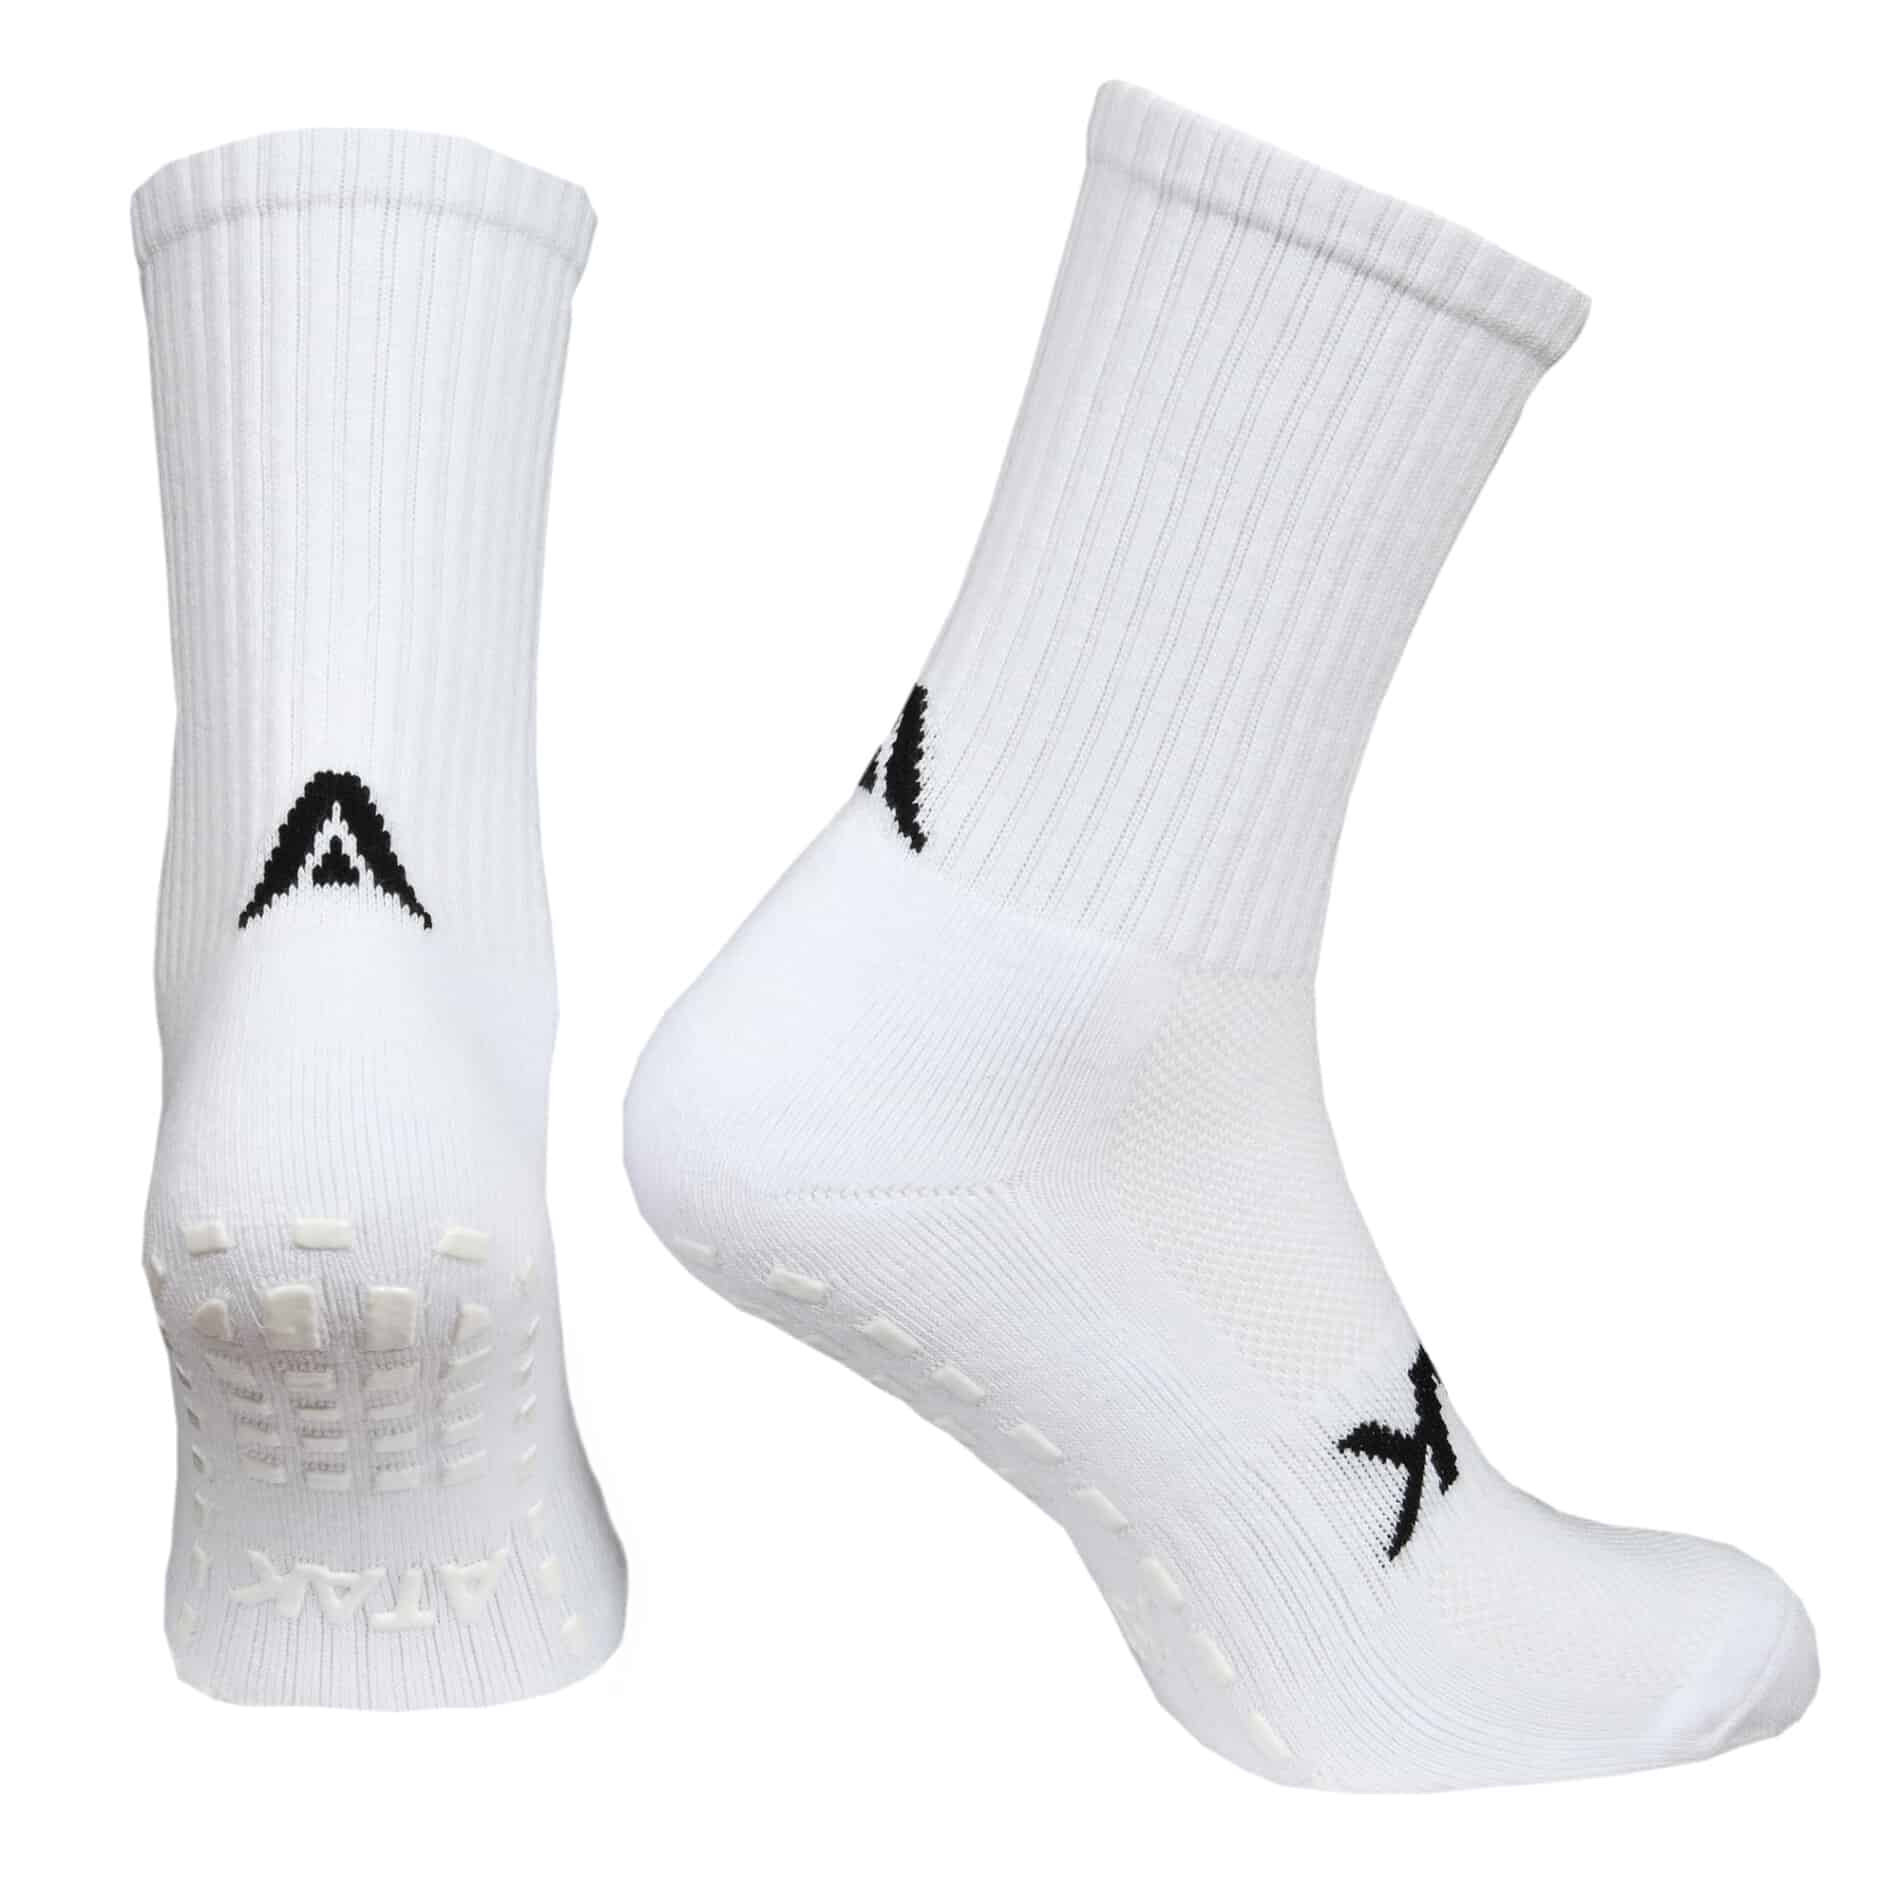 ATAK C-GRIP Socks Black – ATAK Sports GB